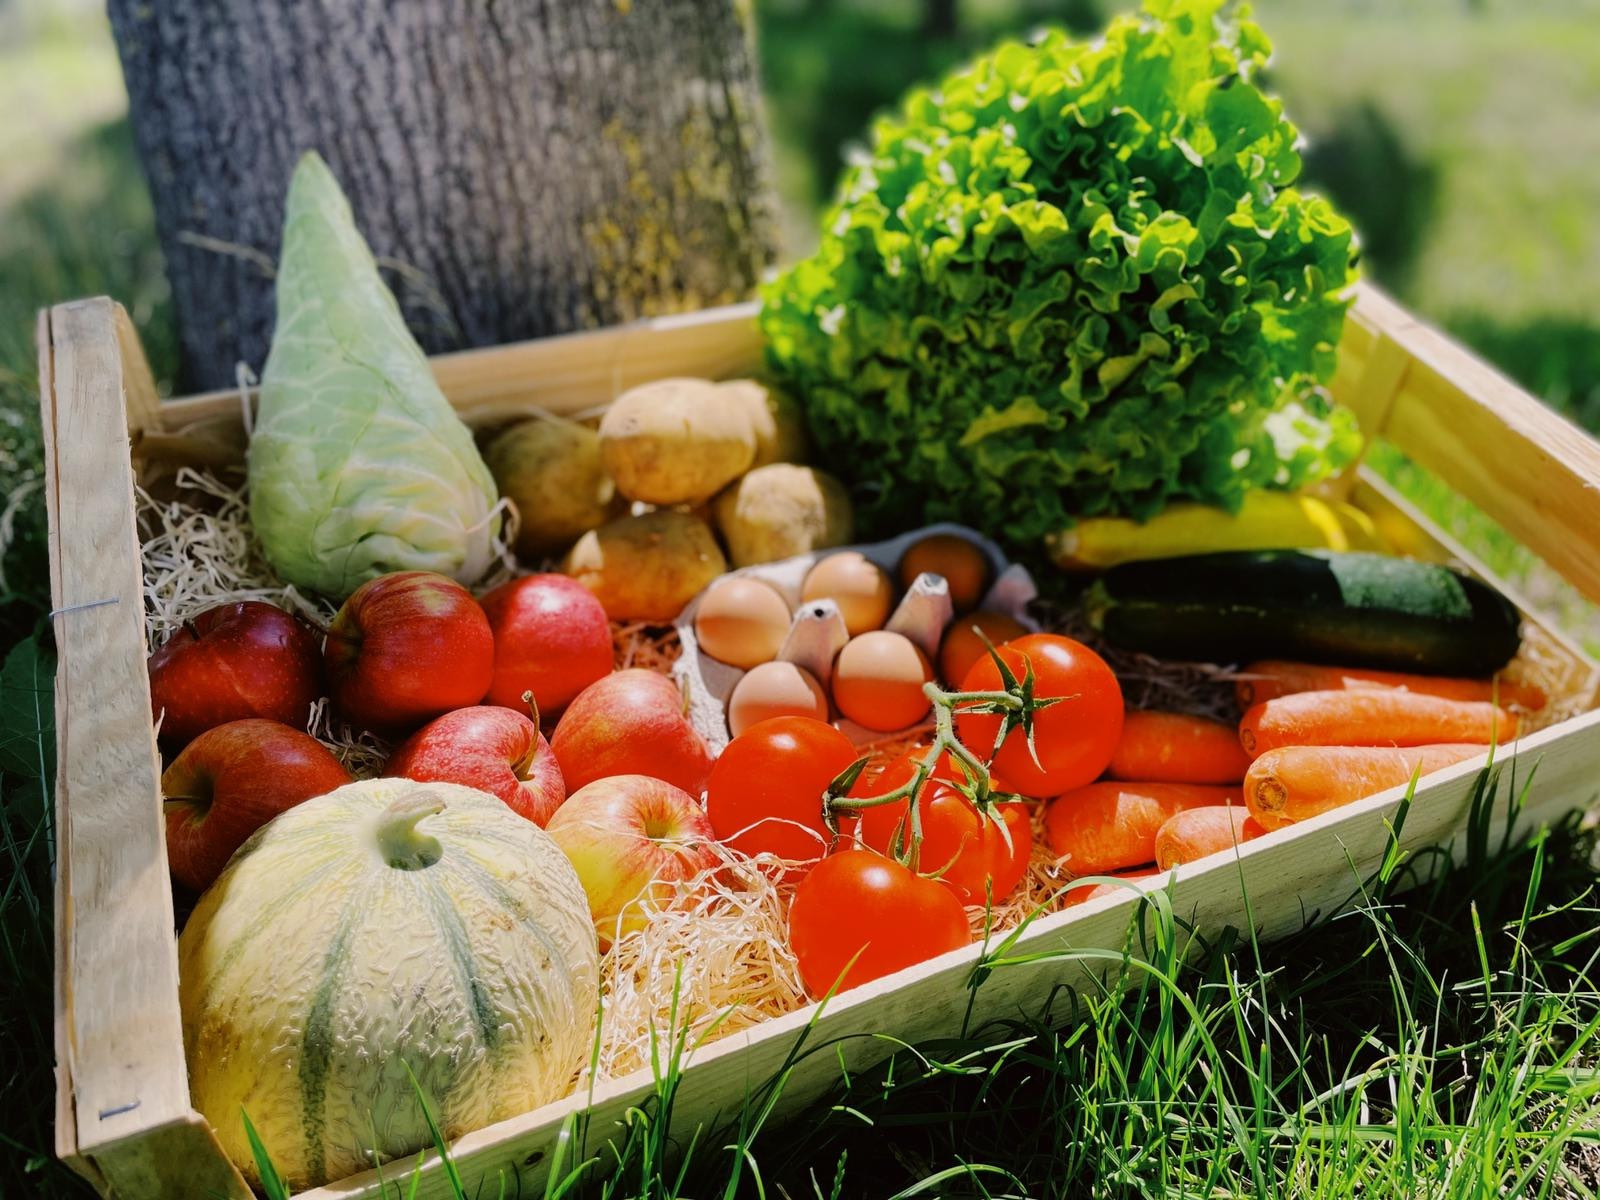 Panier Famille fruits et légumes 100% BIO 15 euros